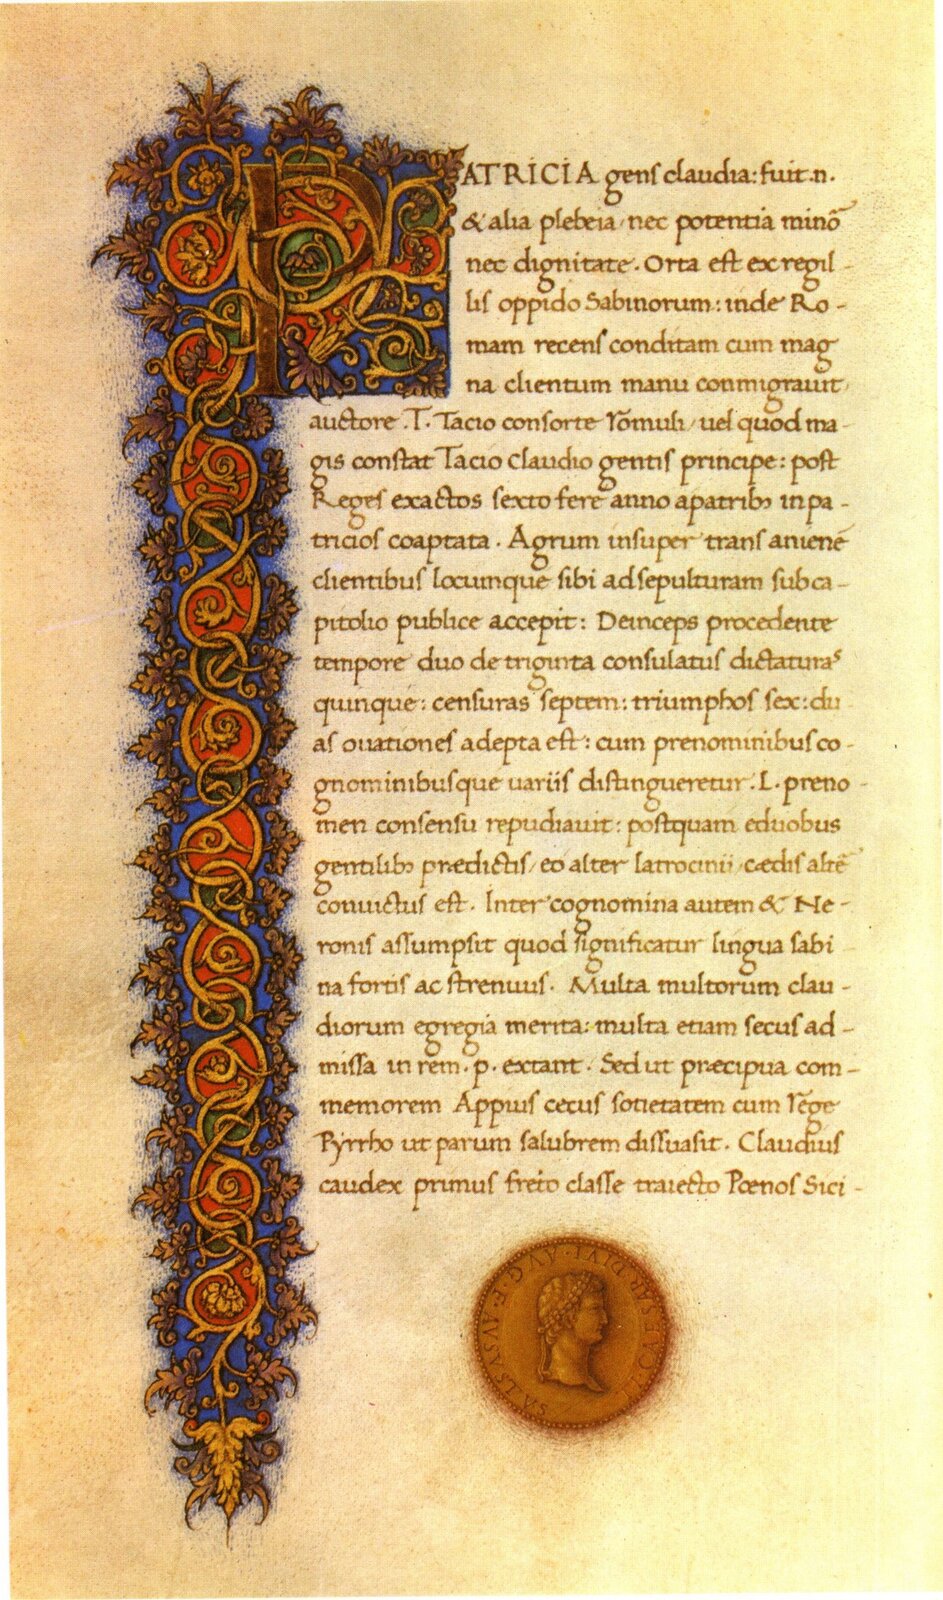 Ilustracja przedstawia kartę z „Żywotu Cezarów” autorstwa Swetoniusza. Na brązowej kartce znajduje się długi tekst. Z lewej strony widoczne są zdobienia w postaci kolorowych zawijasów.